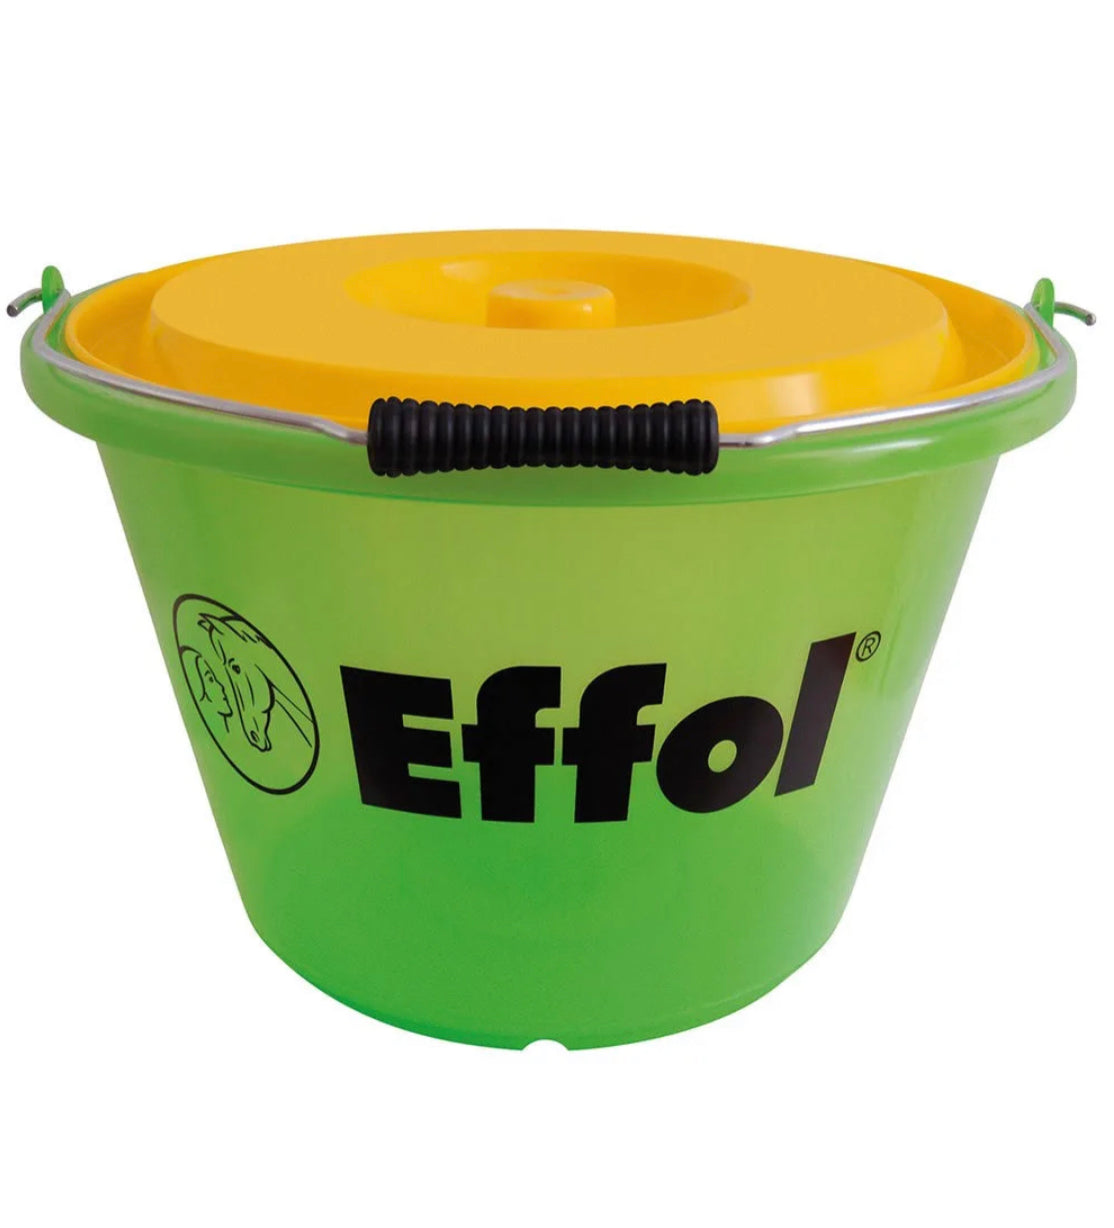 Effol Bucket with Lid 17L